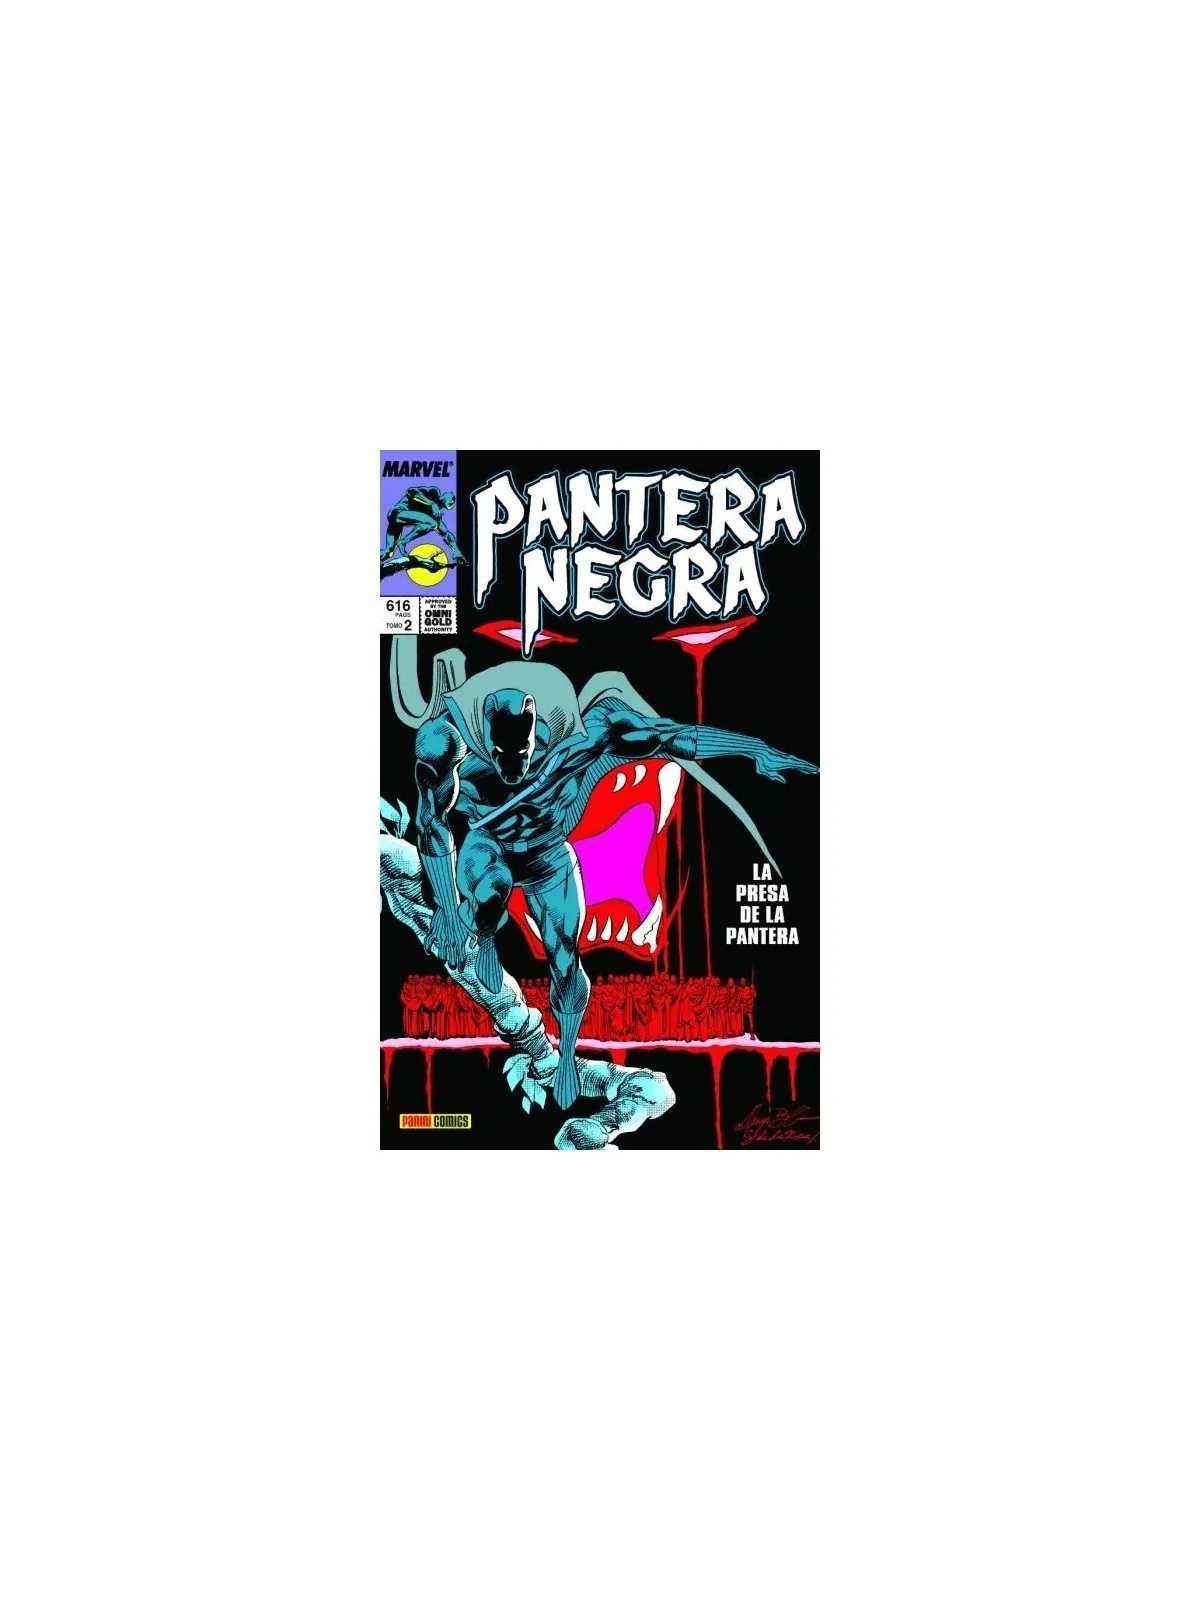 Comprar Marvel Gold: Pantera Negra 02 barato al mejor precio 47,45 € d